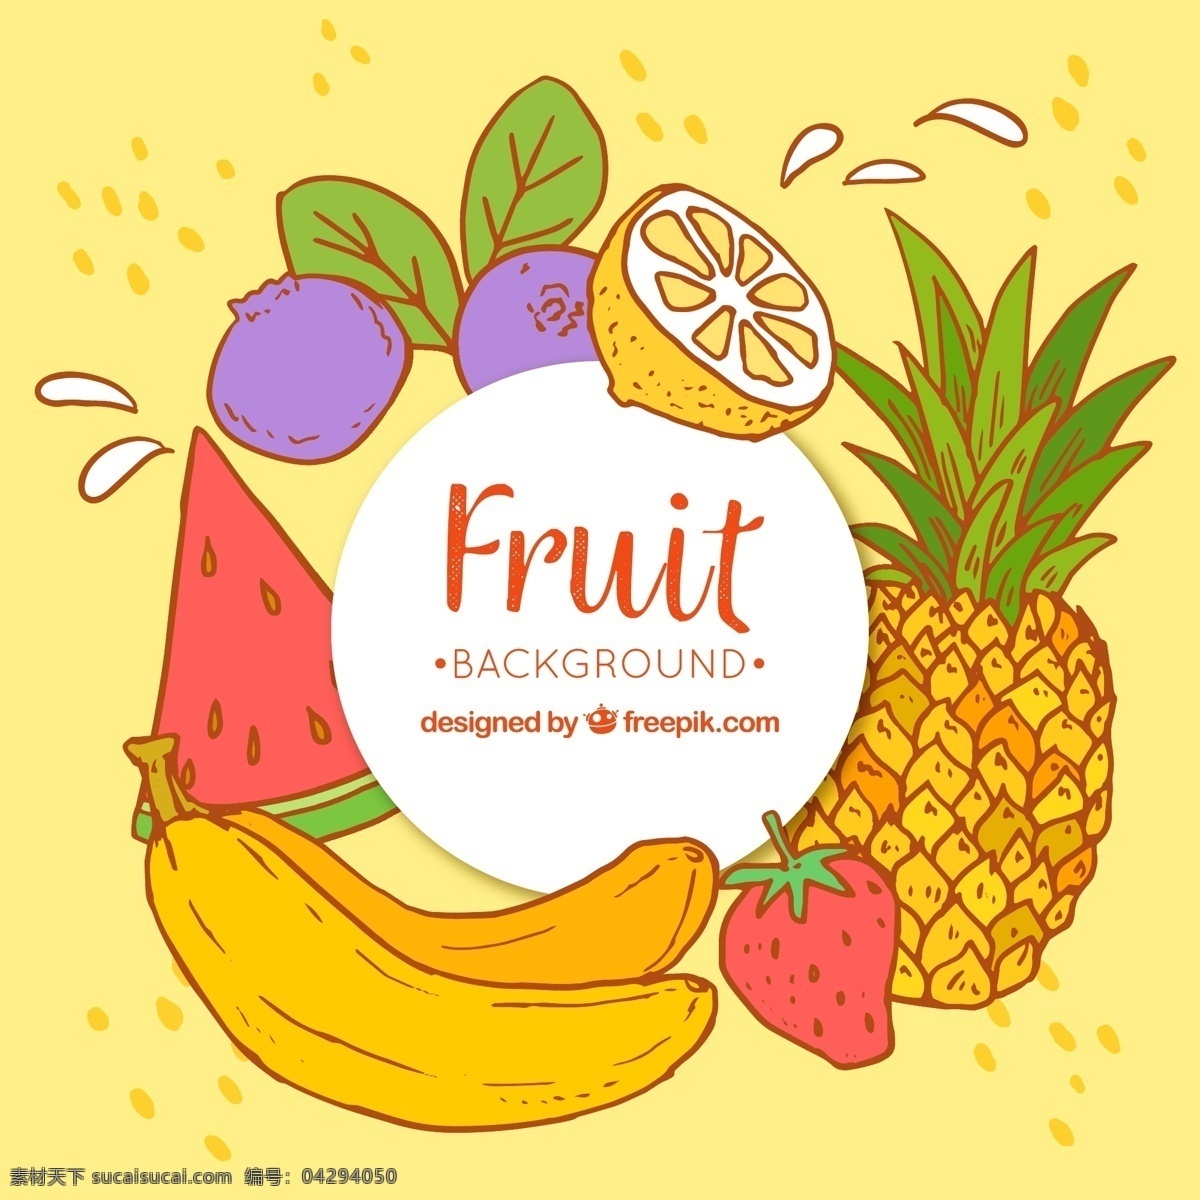 彩色 水果 手绘 背景 的背景下 食品 手工 颜色 热带 多彩的背景 自然 健康 香蕉 草莓 柠檬 菠萝 自然背景 健康食品 西瓜 营养